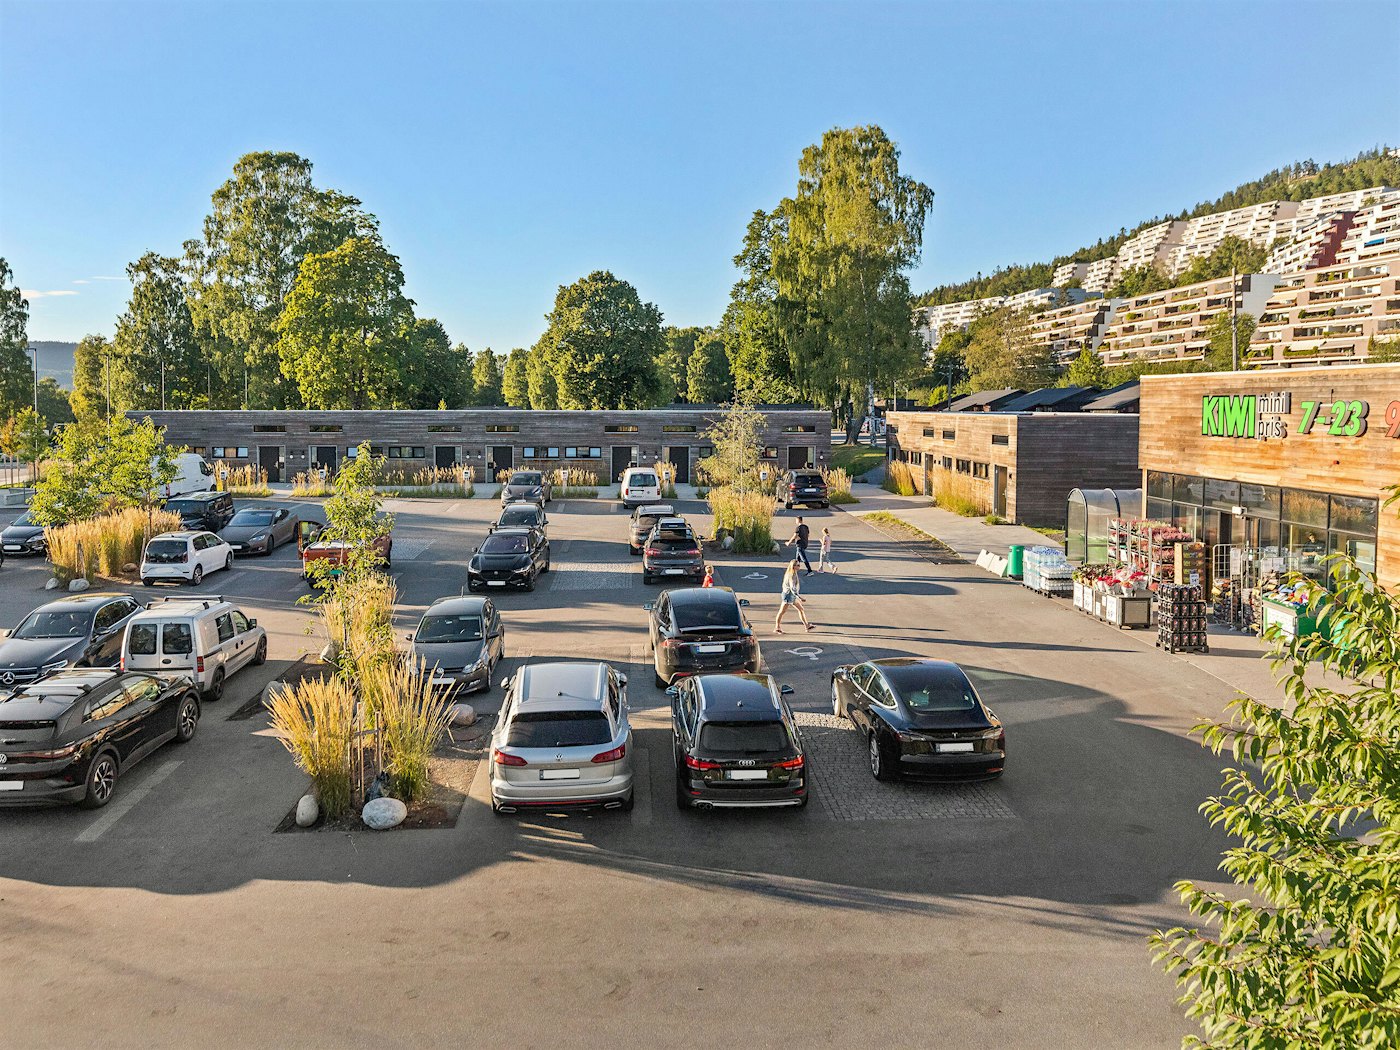 Parkplatz mit vielen Autos, Wohnhäuser im Hintergrund. Kiwi-Laden an der Seite. Foto